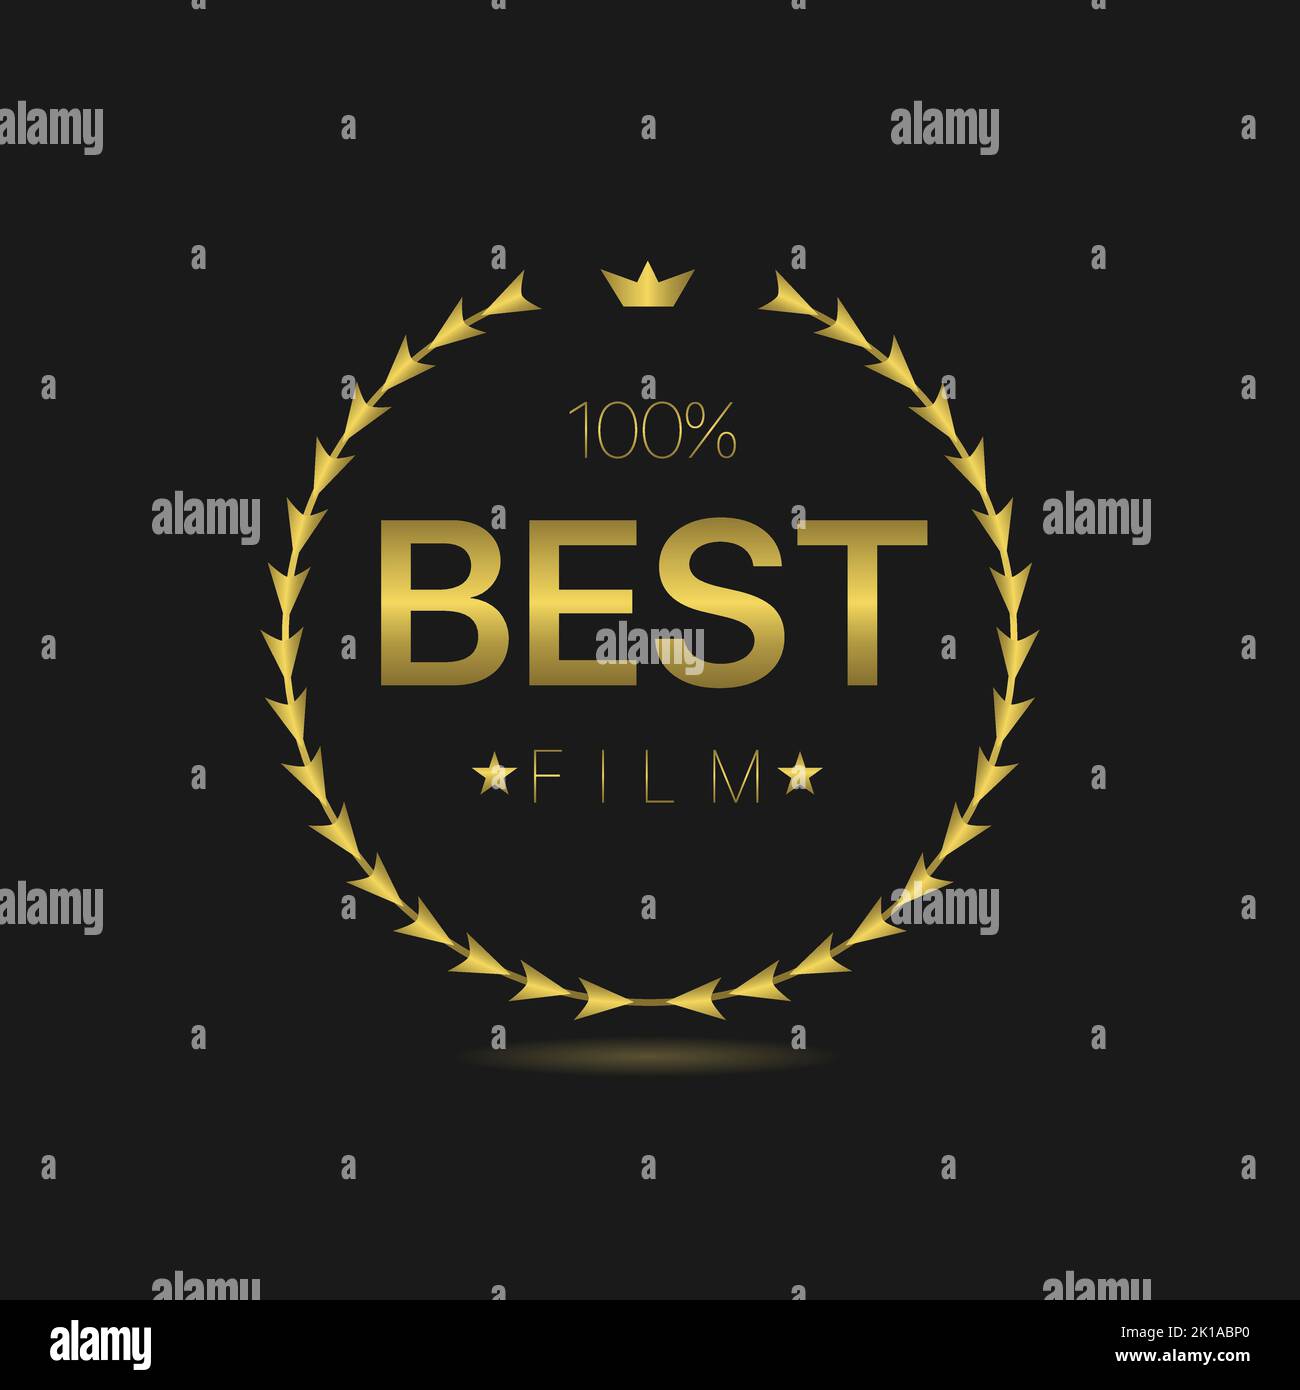 Best film golden laurel wreath label Stock Vector